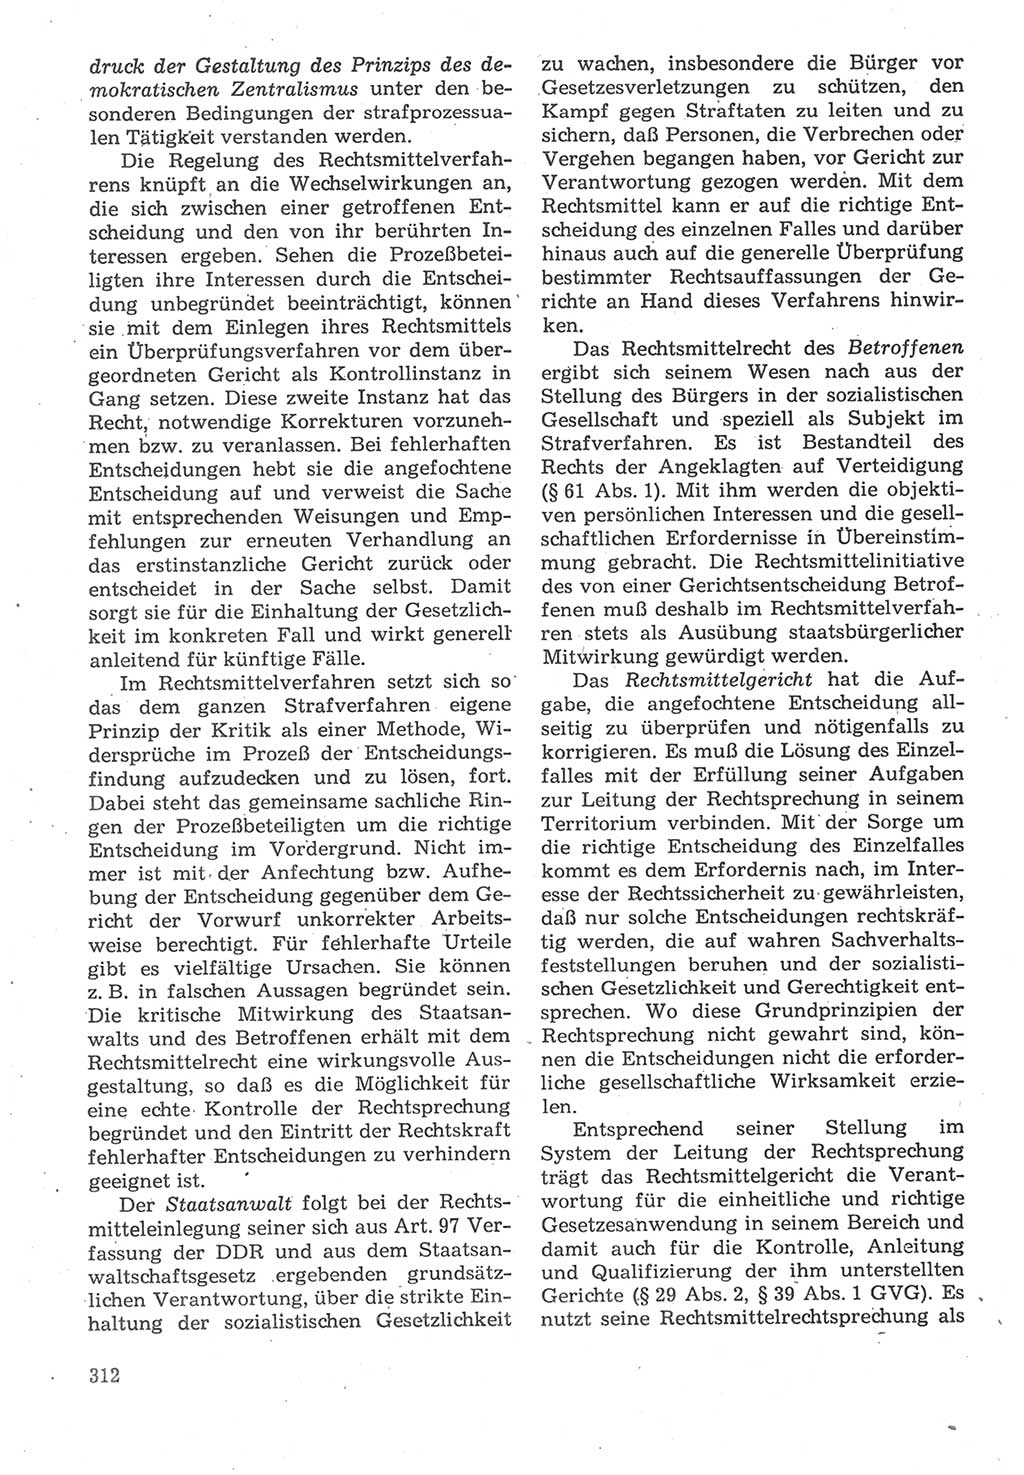 Strafverfahrensrecht [Deutsche Demokratische Republik (DDR)], Lehrbuch 1987, Seite 312 (Strafverf.-R. DDR Lb. 1987, S. 312)